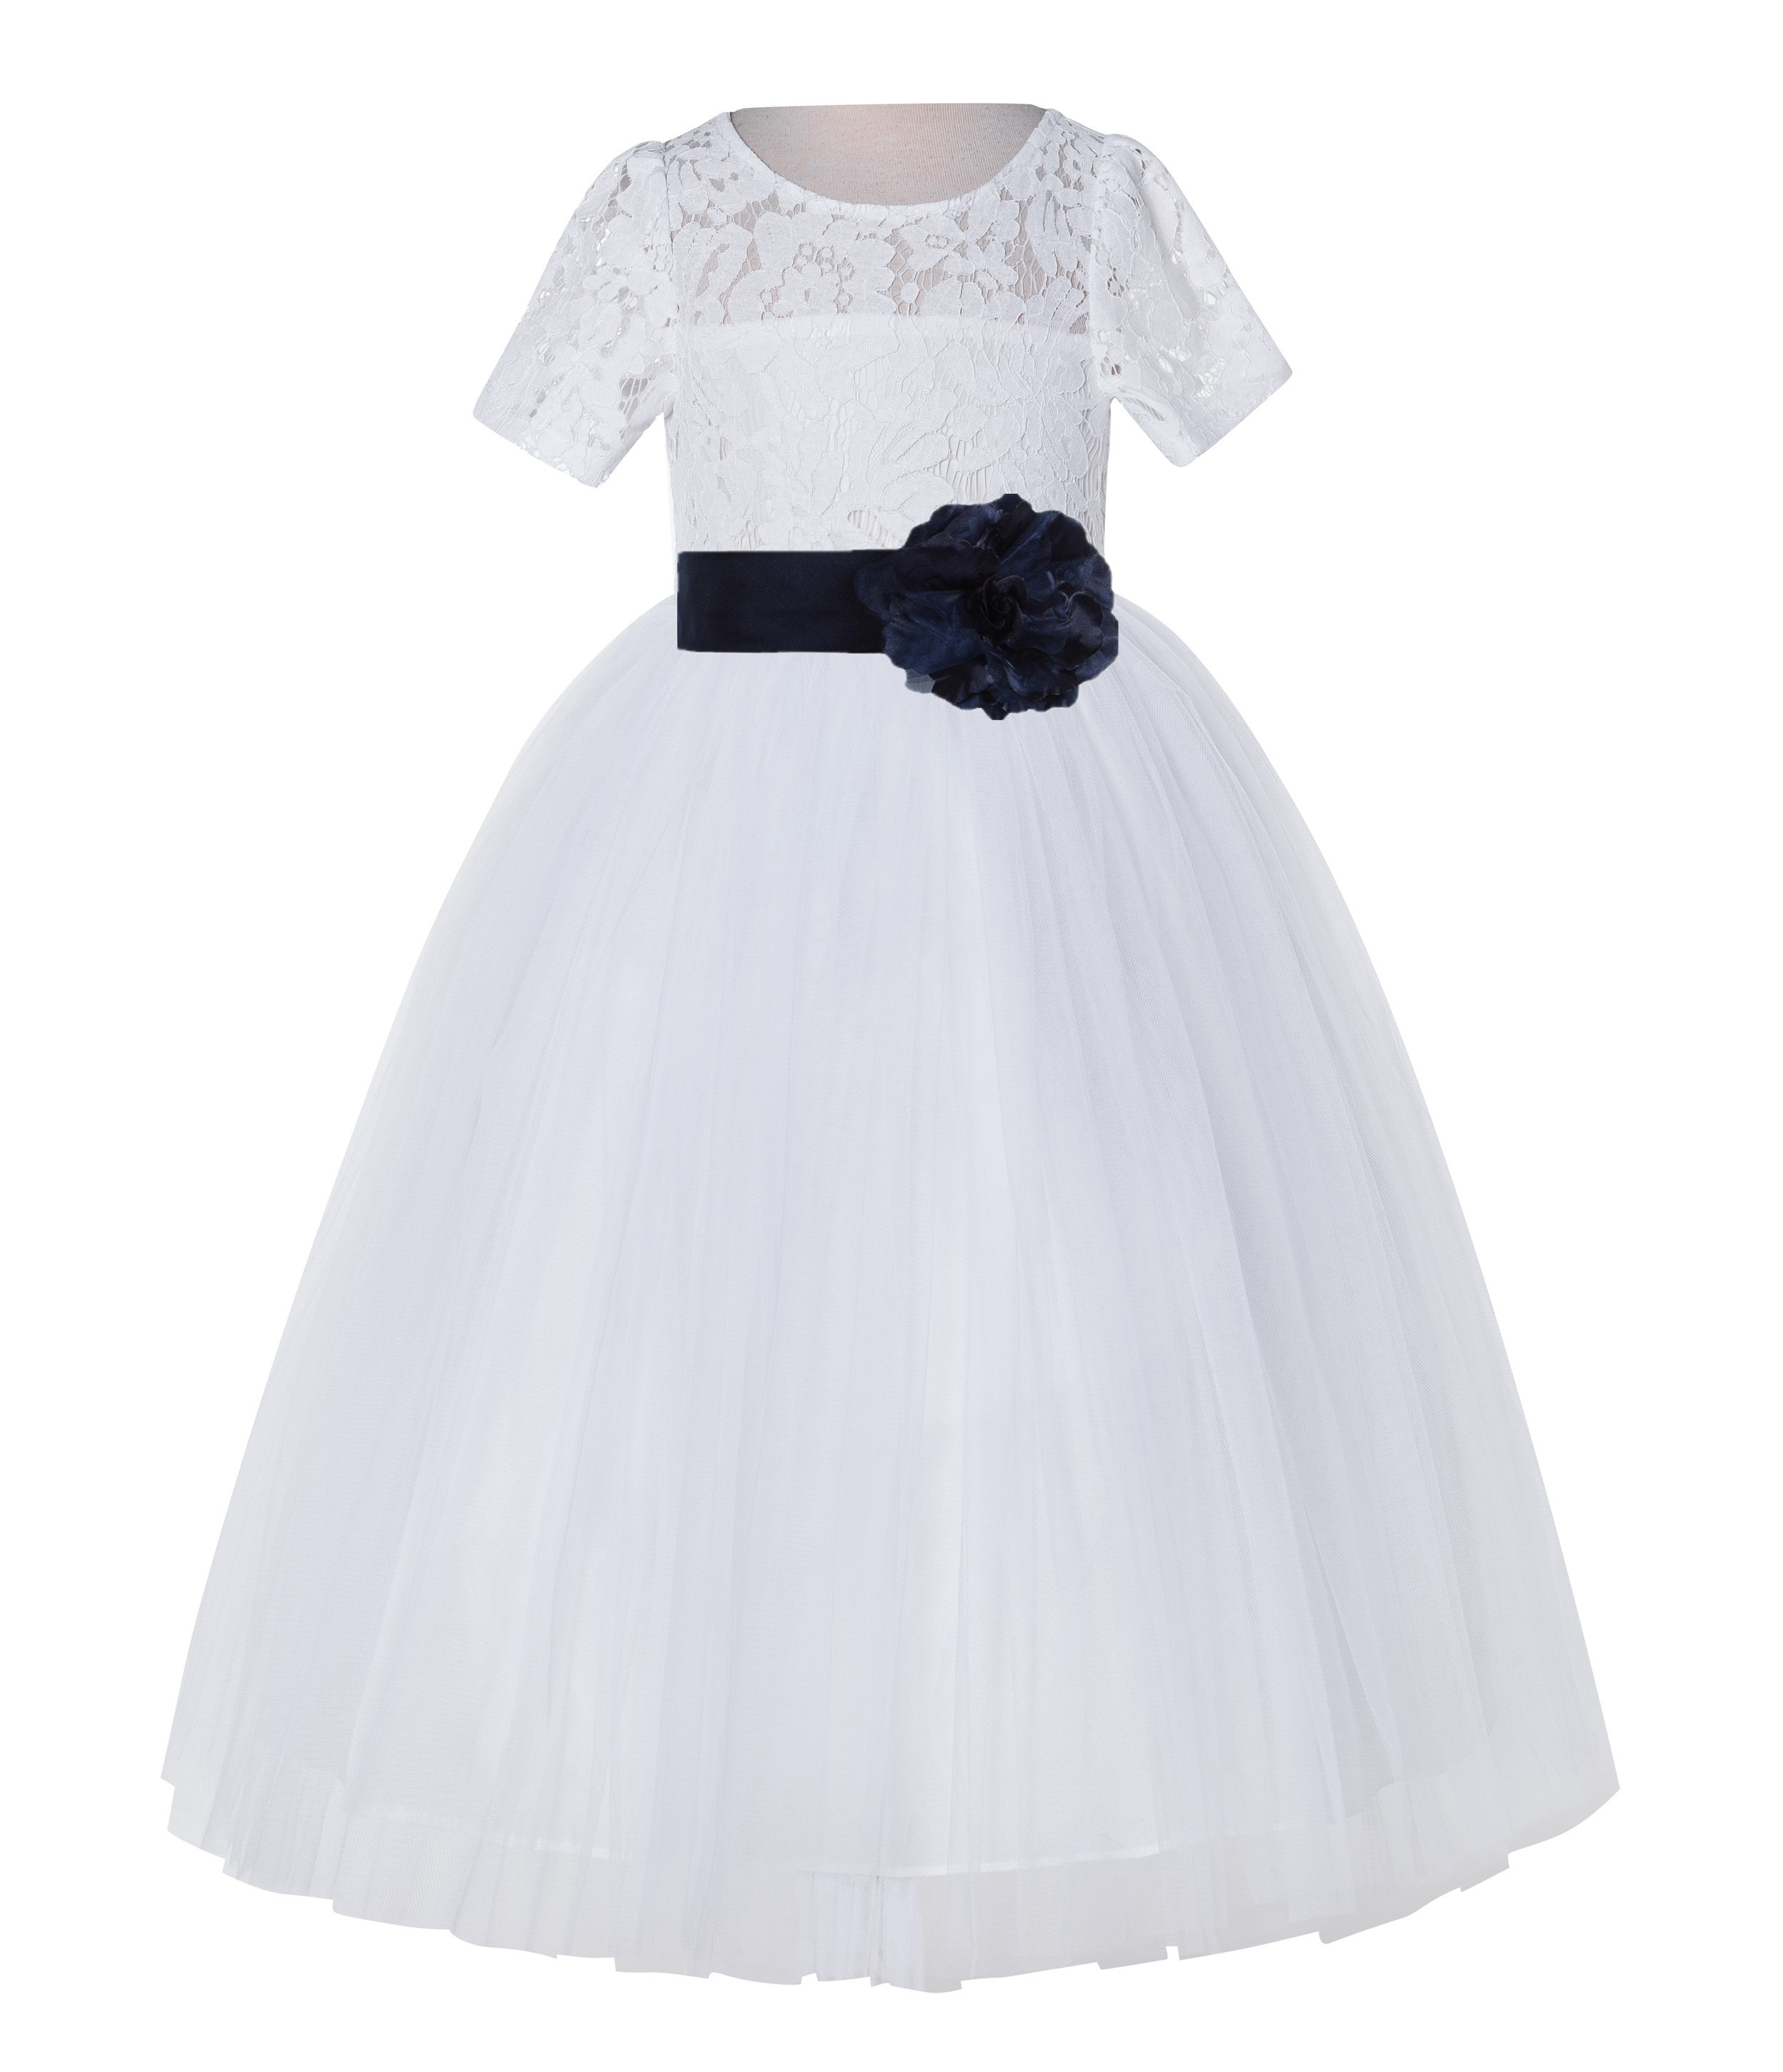 White / Marine Blue Floral Lace Flower Girl Dress Vintage Dress LG2